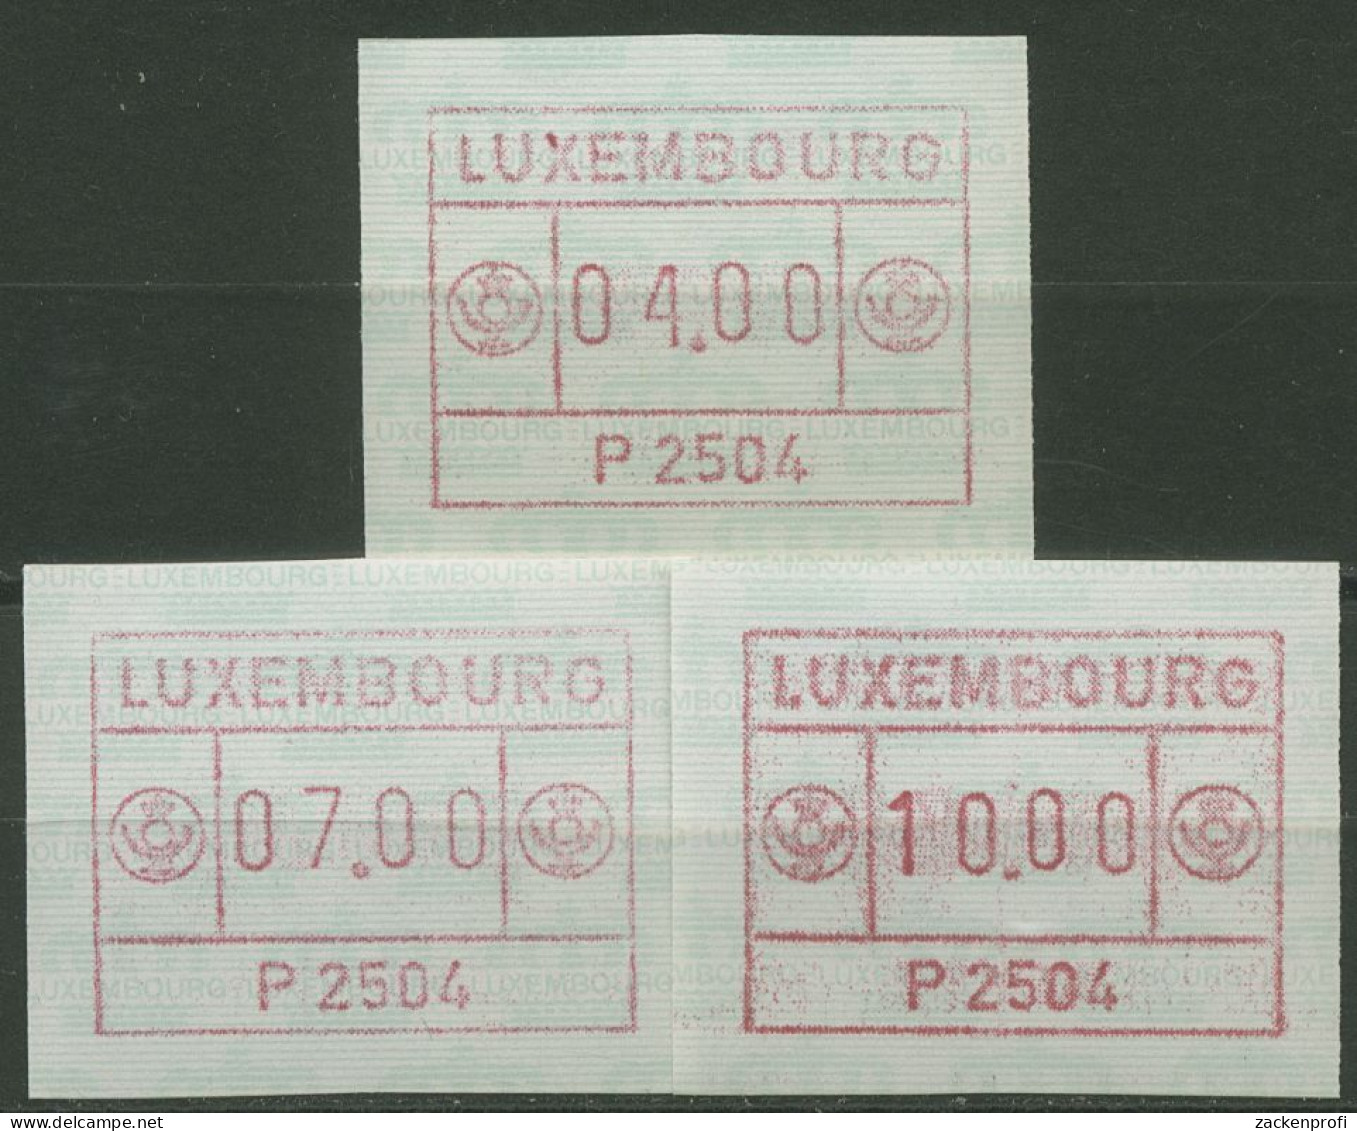 Luxemburg 1983 Automatenmarke Automat P 2504 Satz 1.4 B S1 Postfrisch - Postage Labels